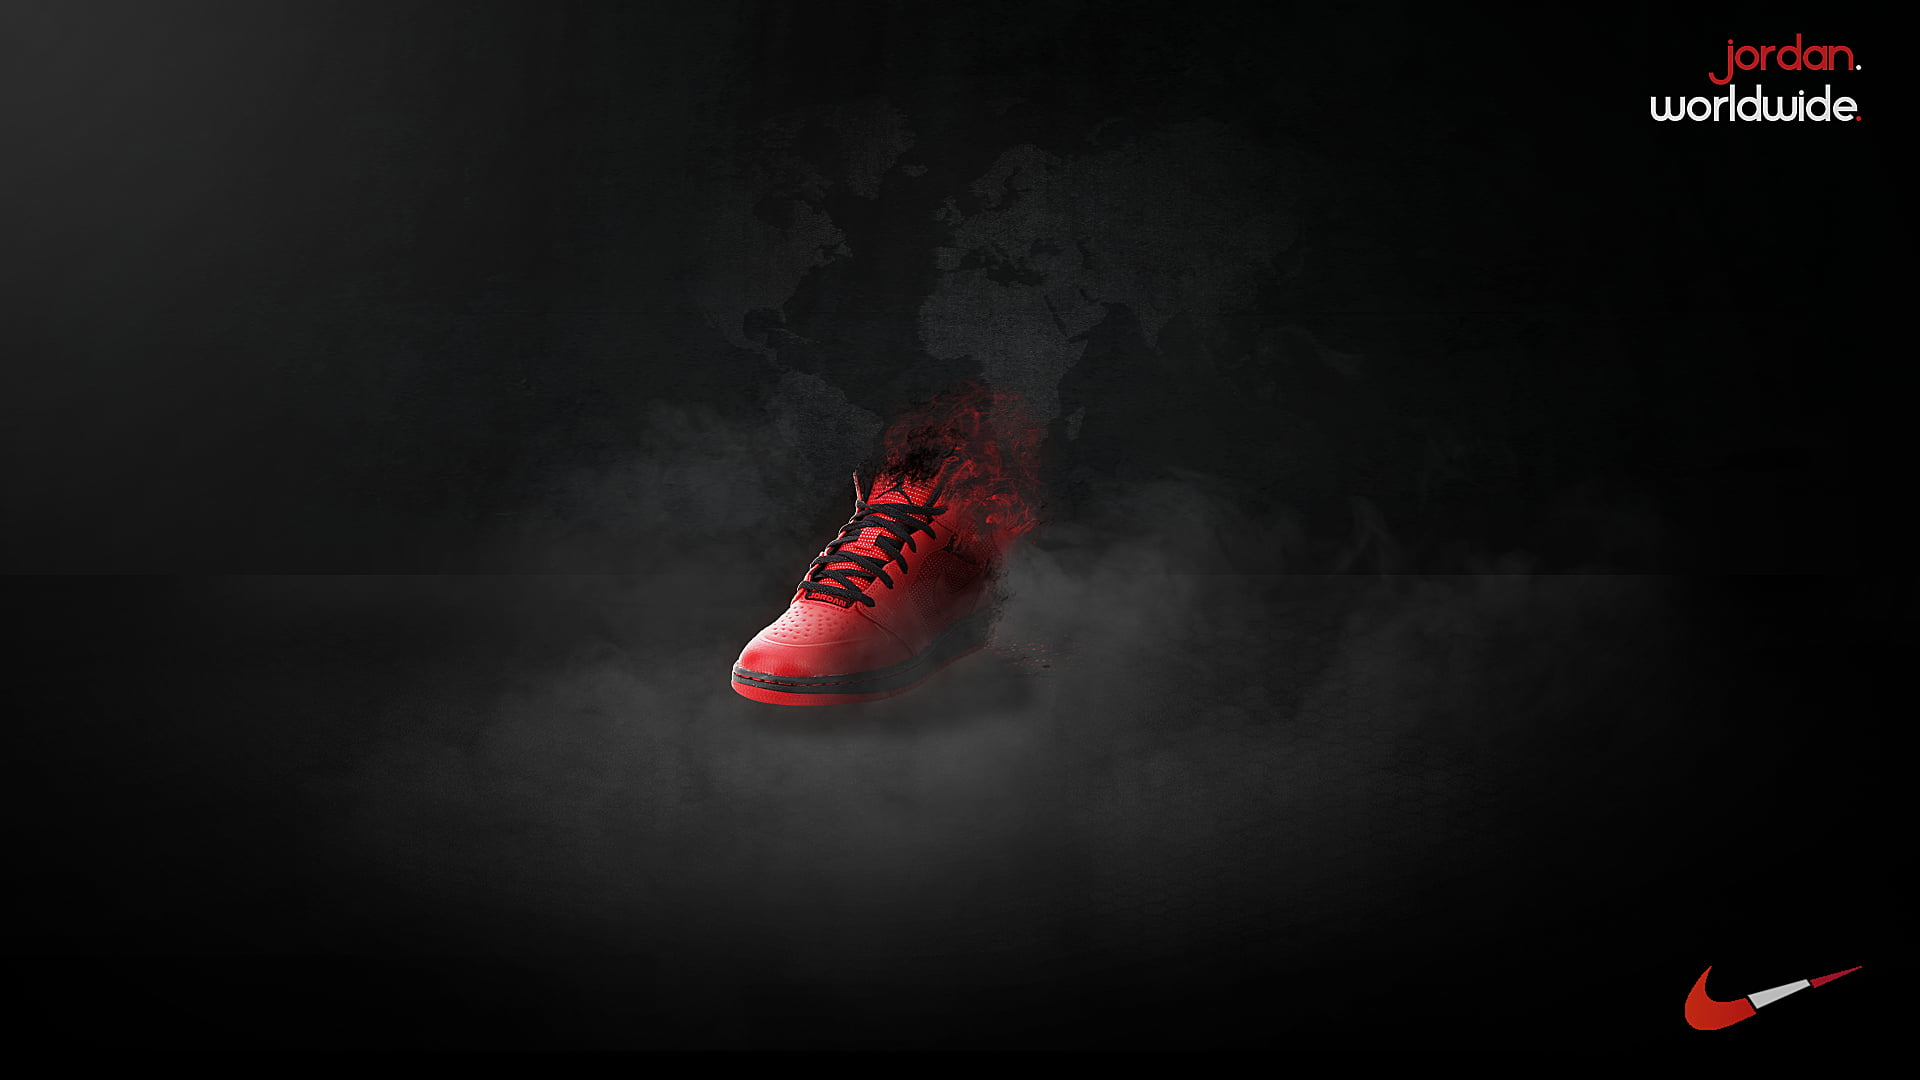 Wallpaper Unpaired Red And Black Nike Air Jordan Basketball Shoe, Digital Art